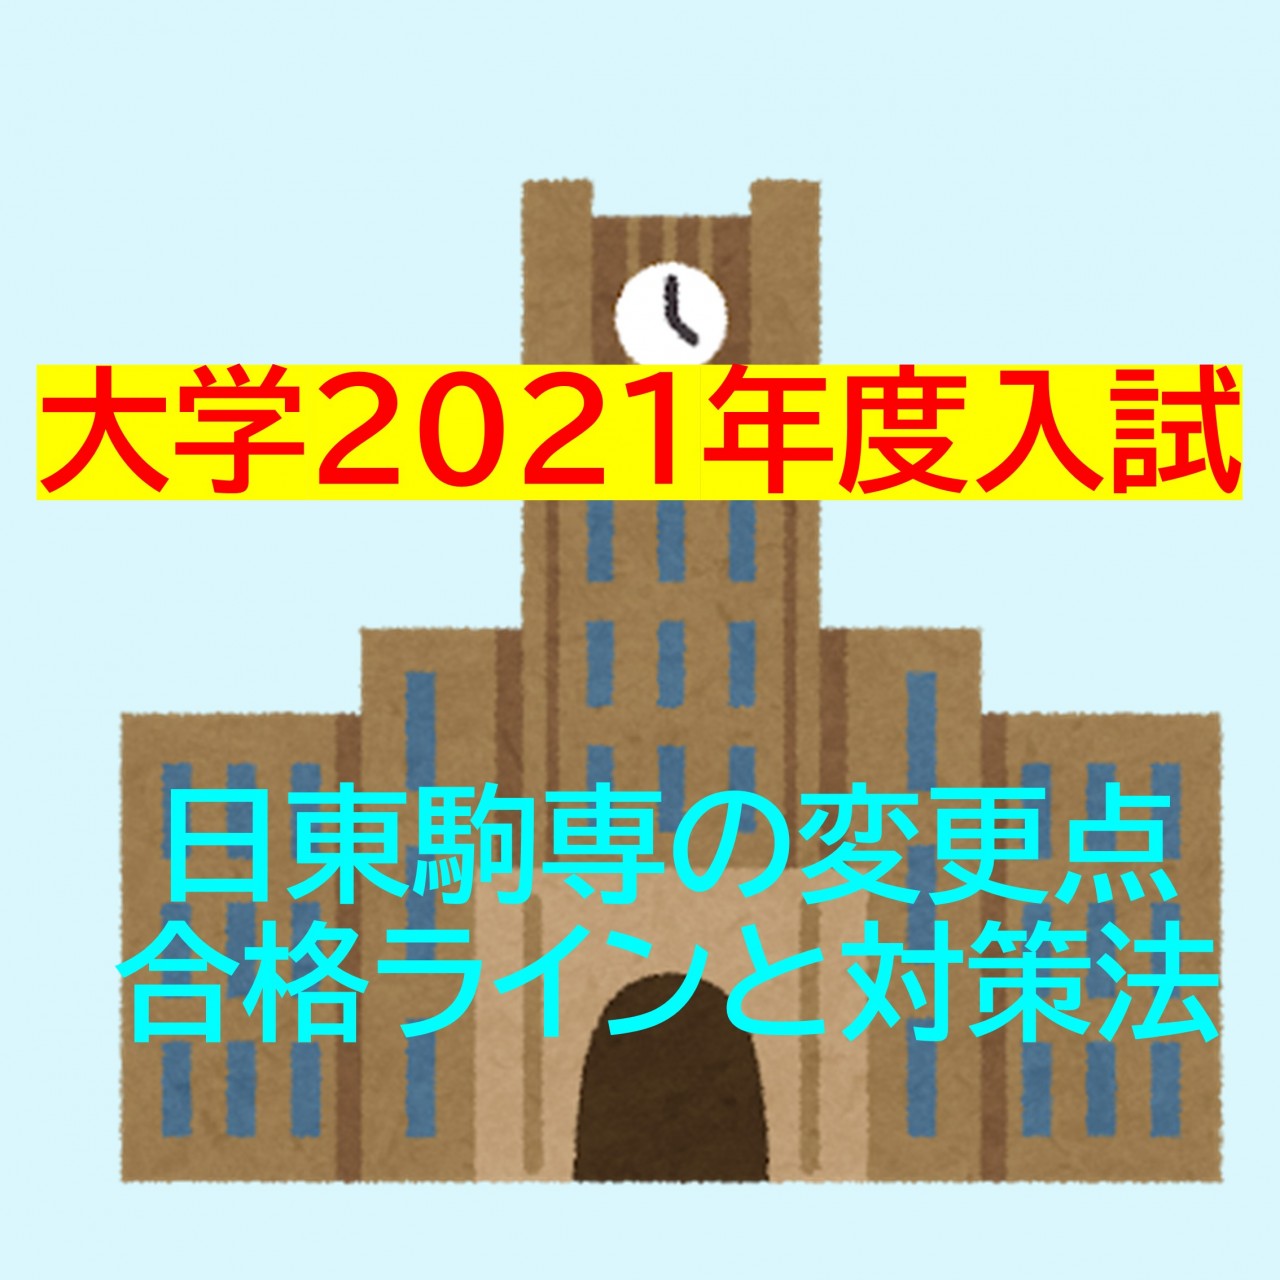 【2021年度大学入試】日東駒専の変更点、合格ラインと対策法